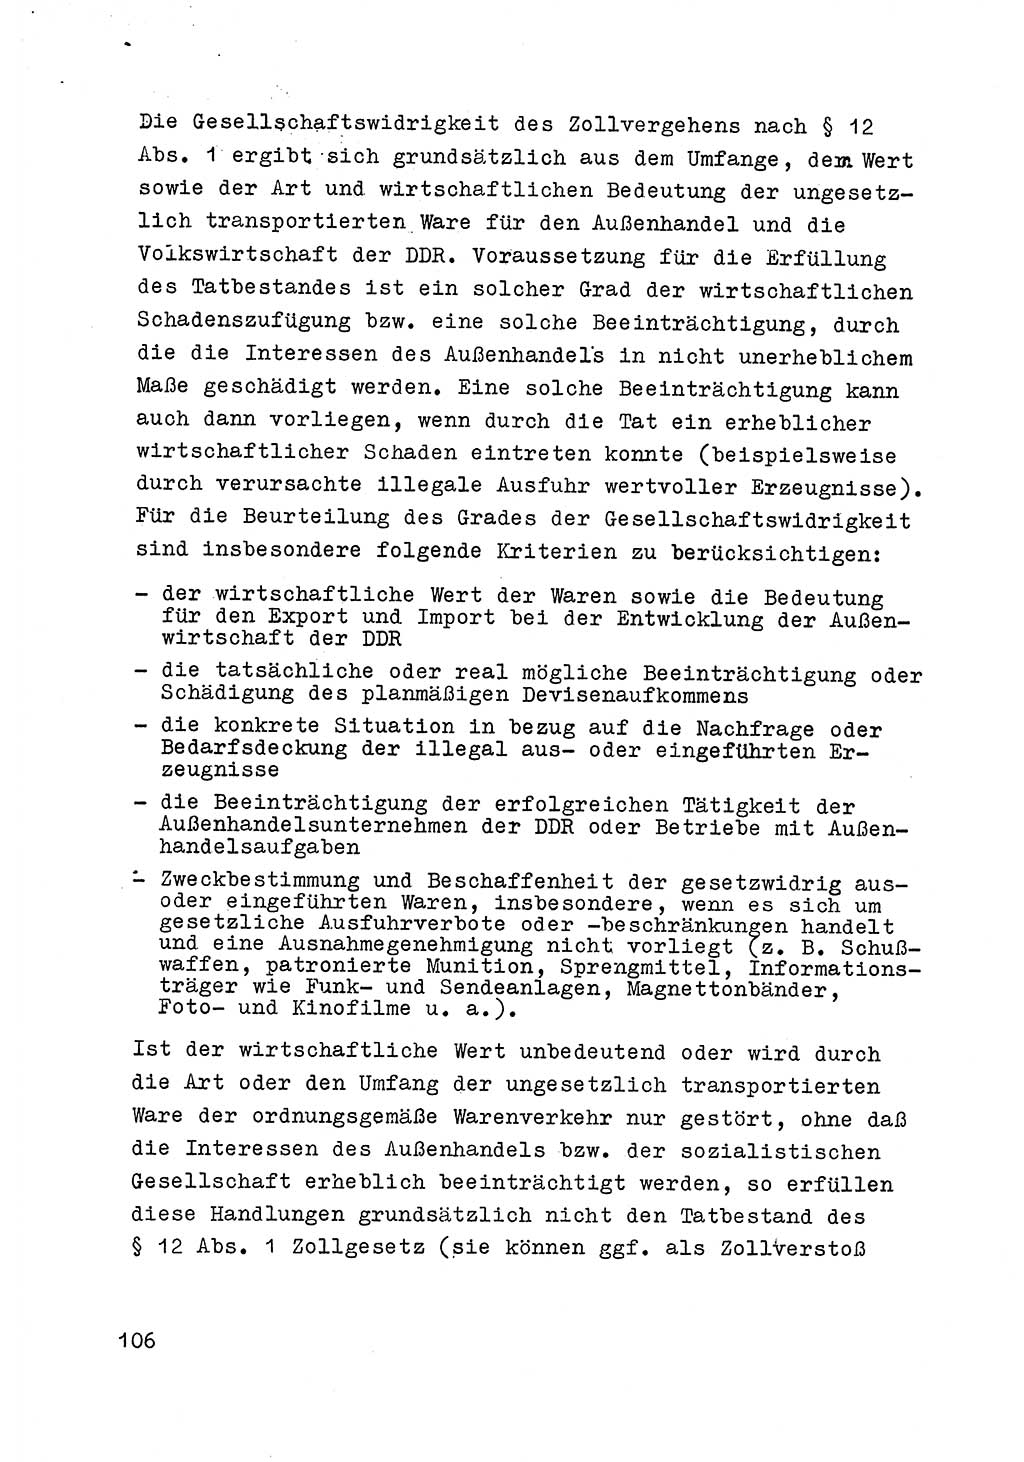 Strafrecht der DDR (Deutsche Demokratische Republik), Besonderer Teil, Lehrmaterial, Heft 6 1970, Seite 106 (Strafr. DDR BT Lehrmat. H. 6 1970, S. 106)